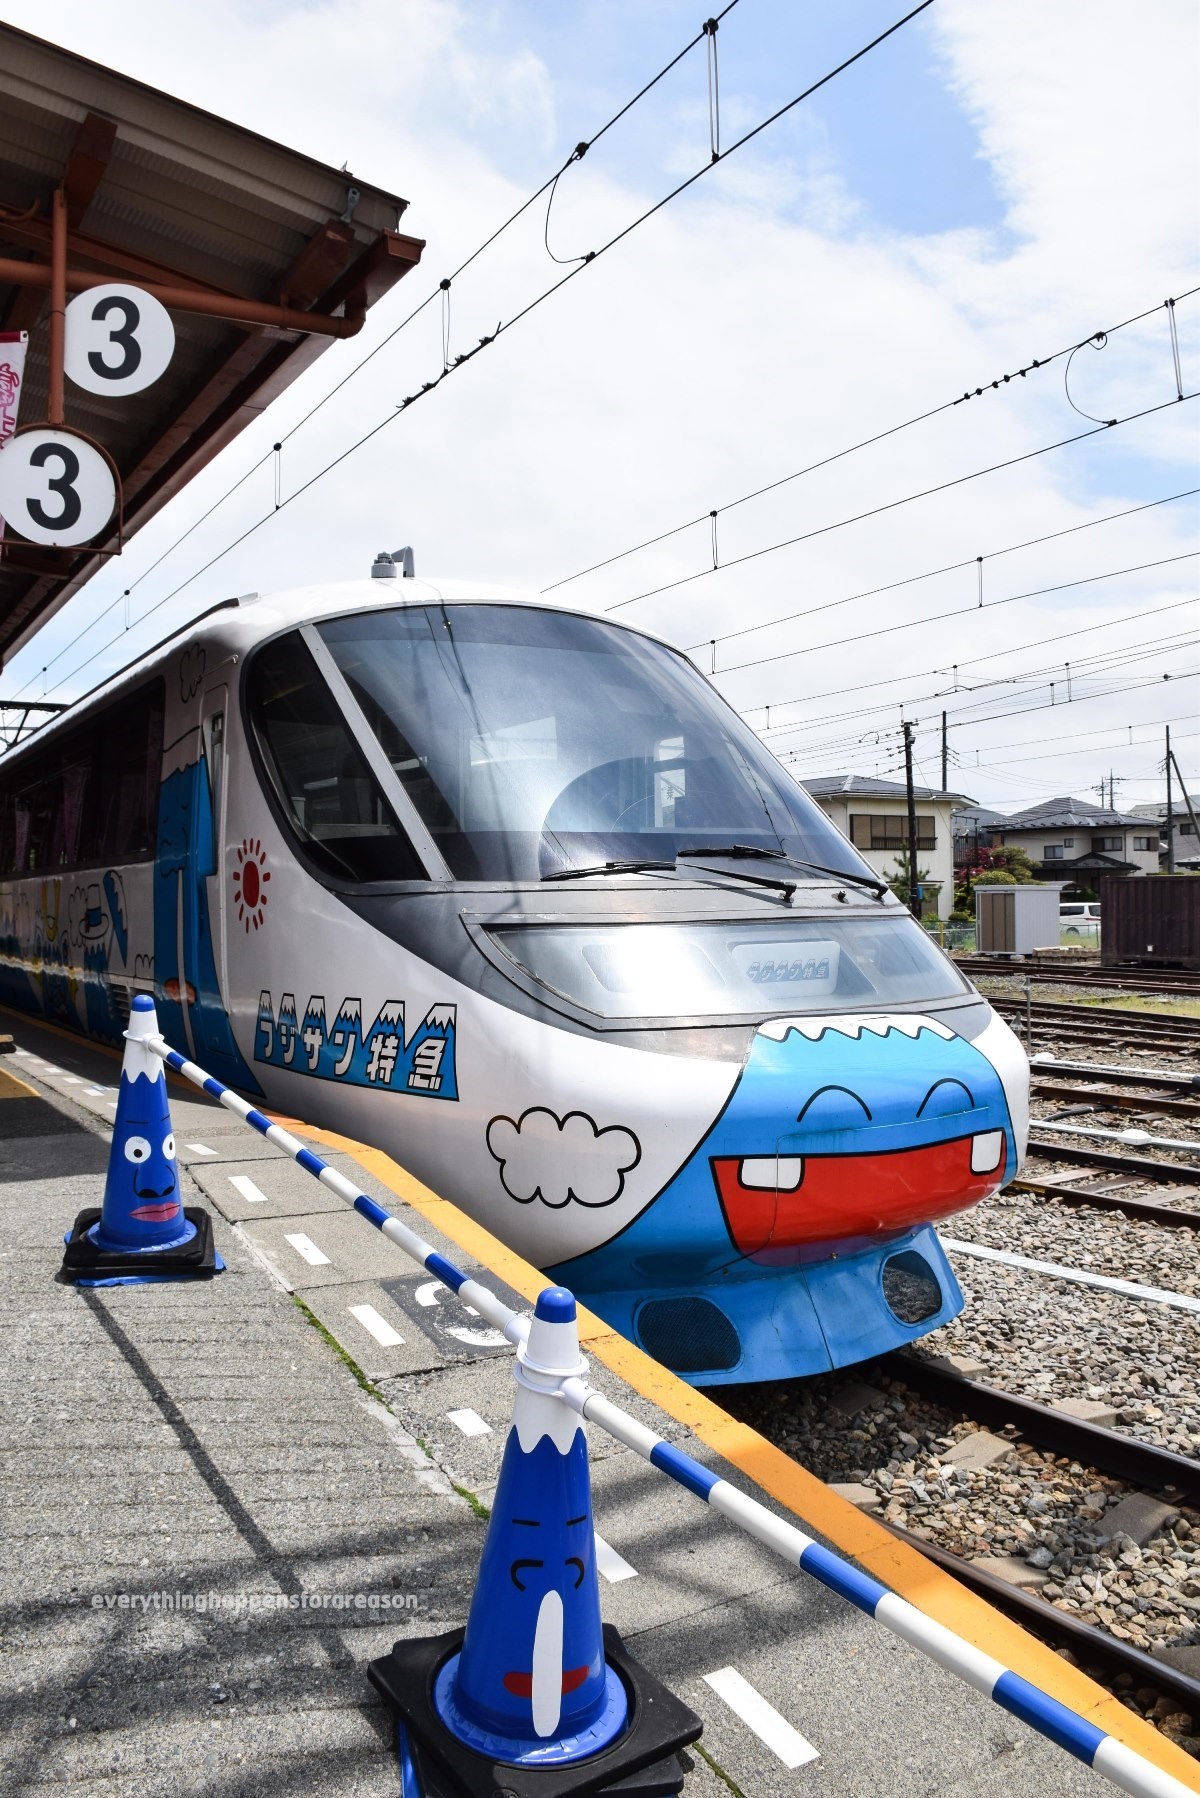 วิธีการจองที่นั่งของ Fujisan Express รถไฟสุดน่ารักเส้นทาง